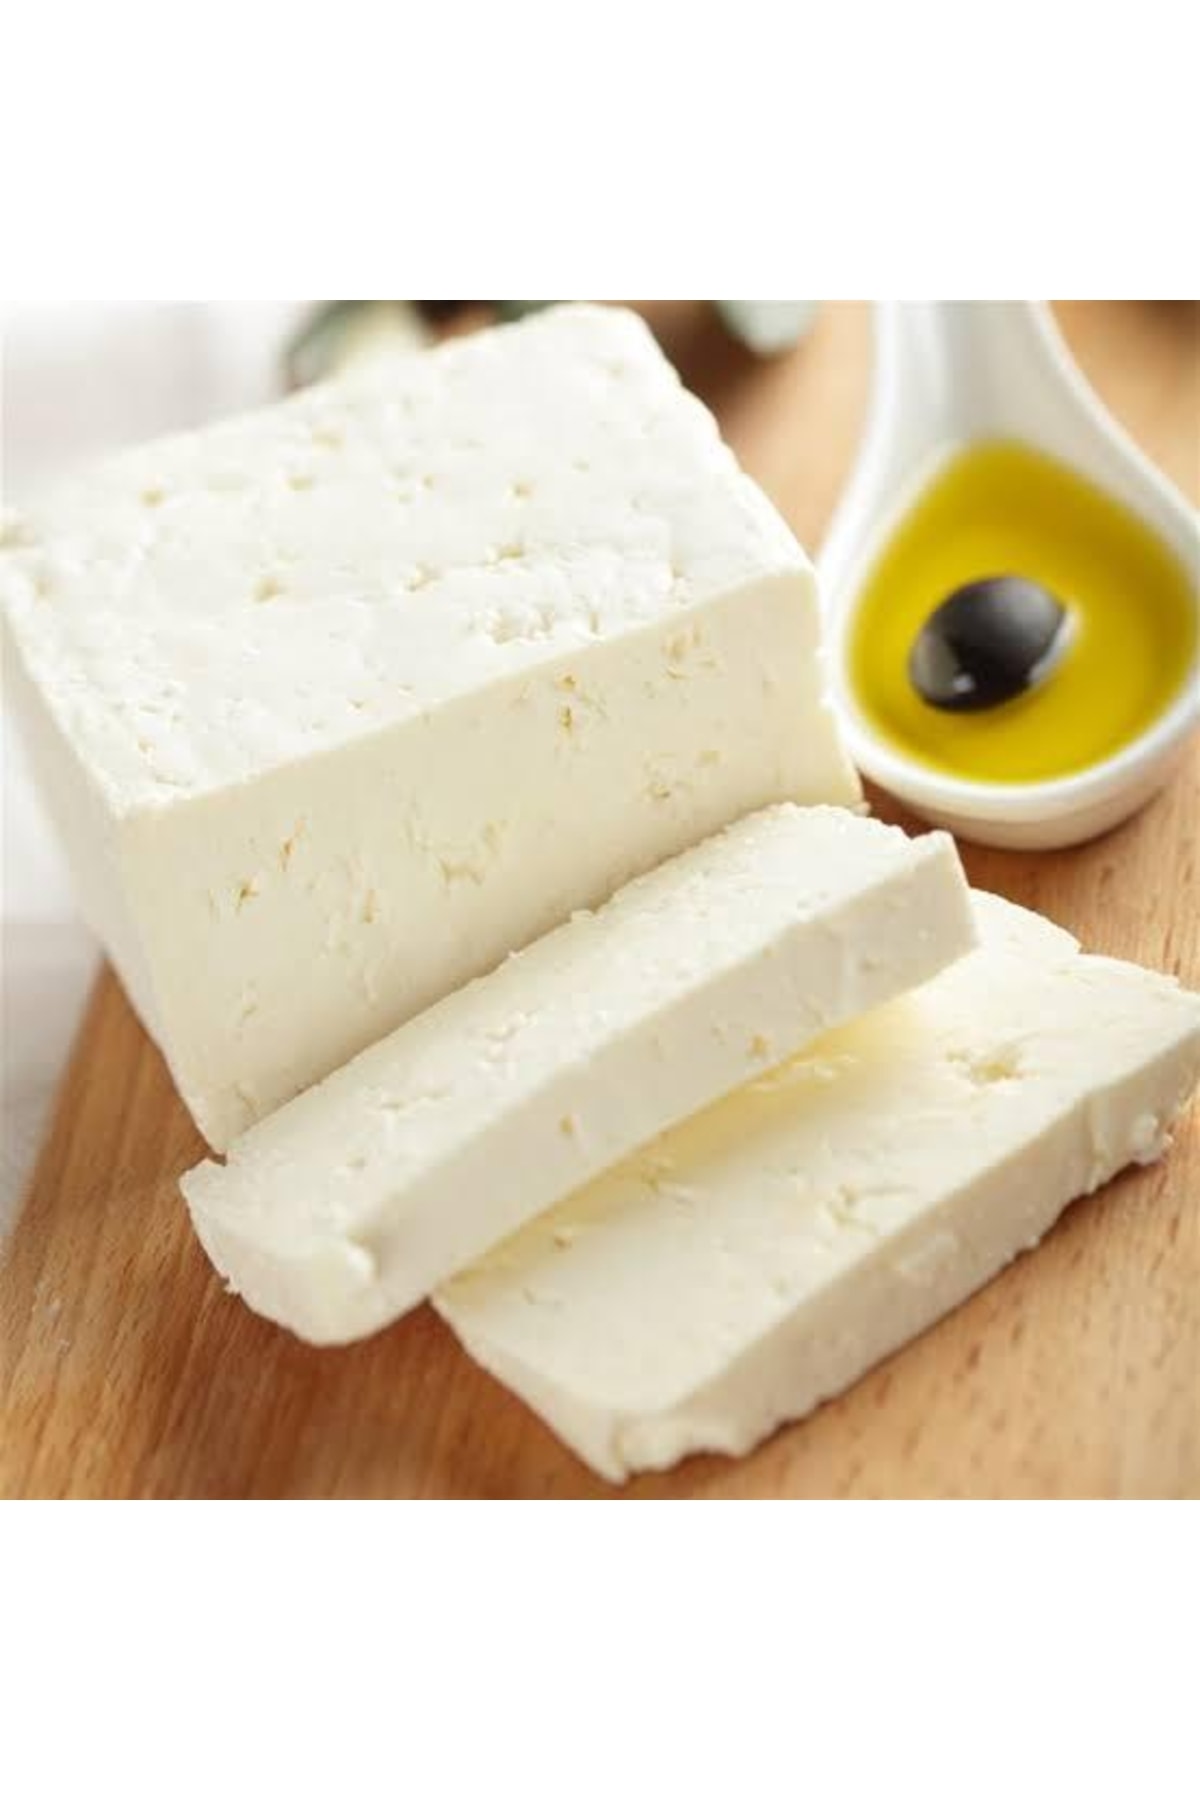 siracbey Beyaz Peynir Yağlı Az Tuzlu 1 Kg